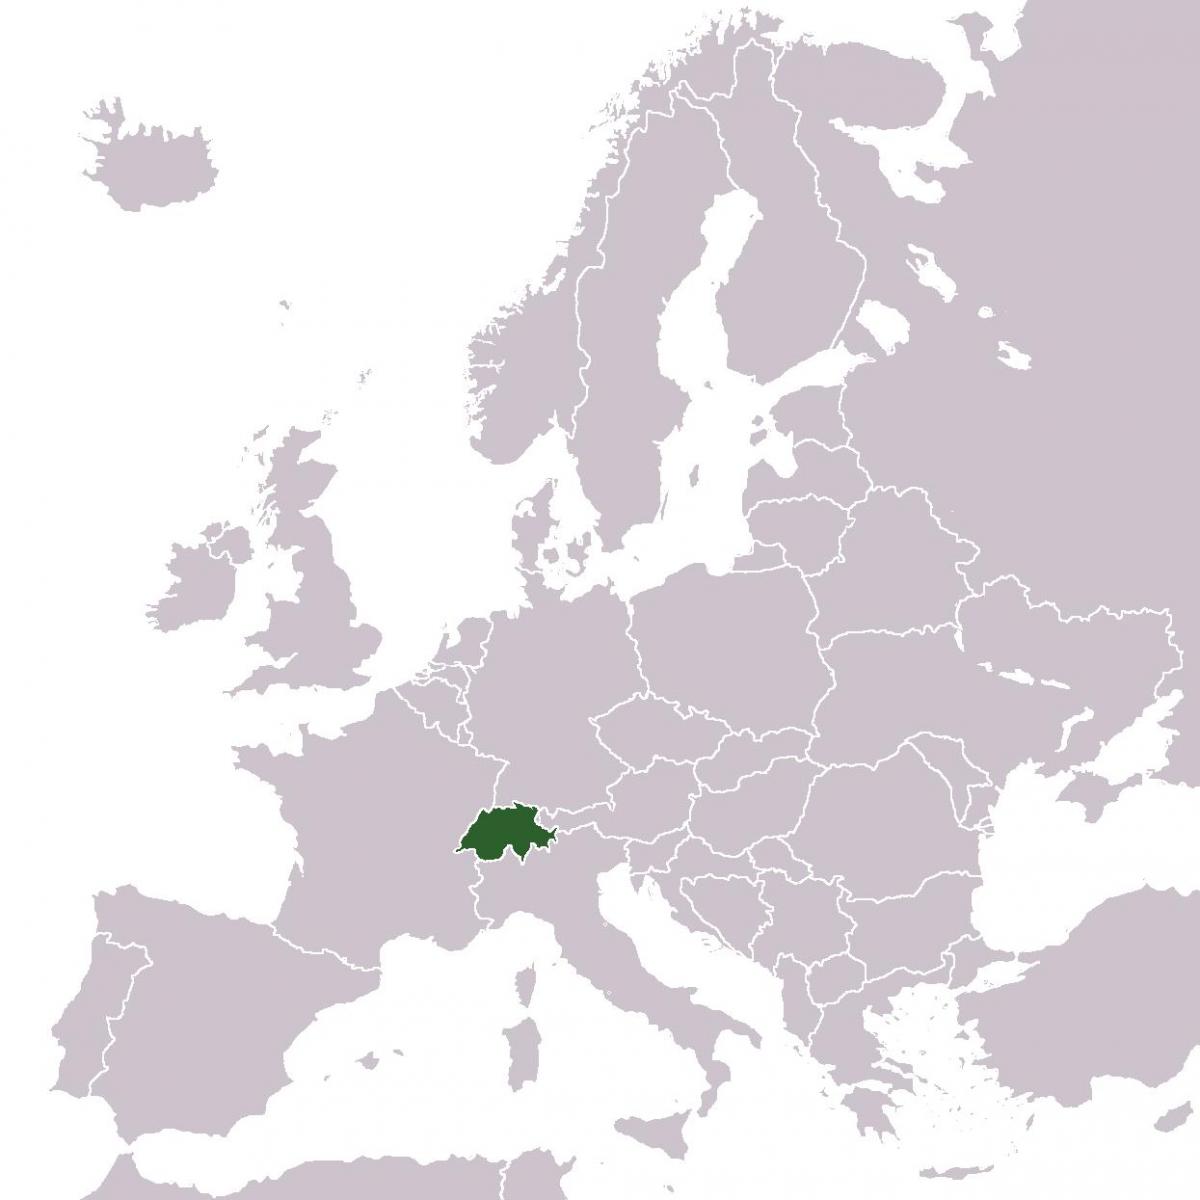 스위스에 위치하는 유럽 지도